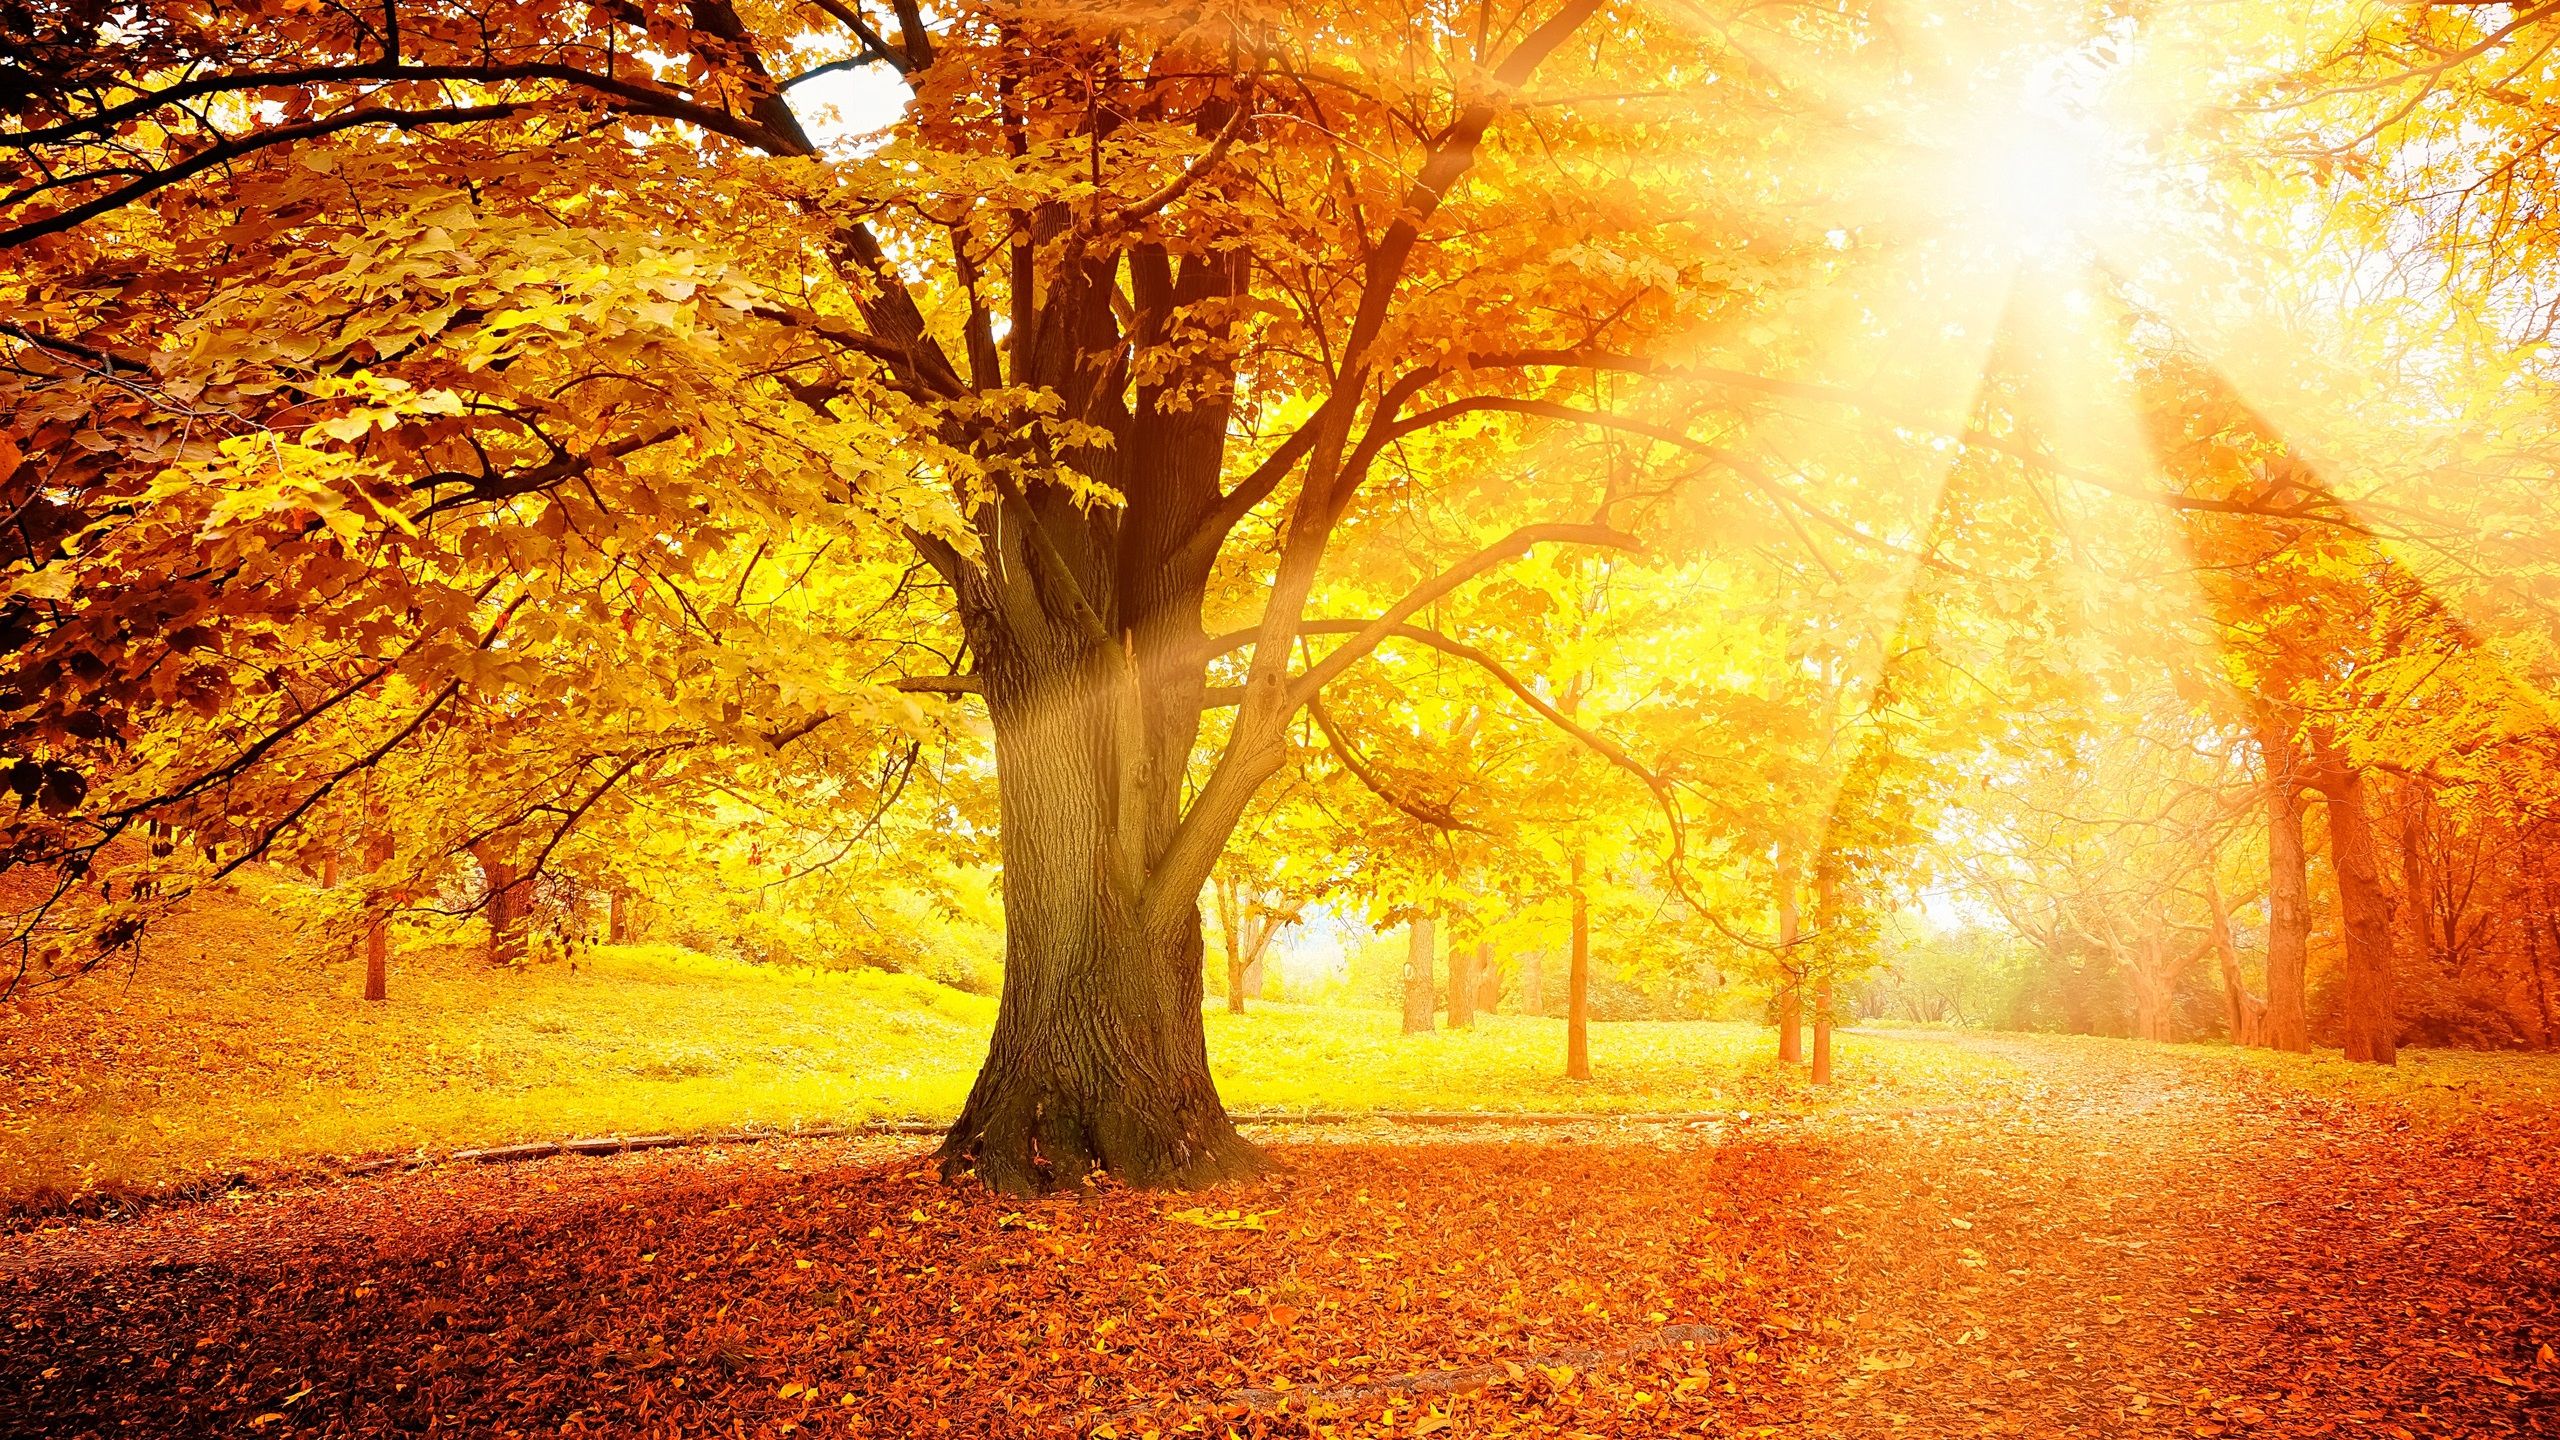 solar #autumn #sunset. Summer painting, Autumn forest, Autumn trees